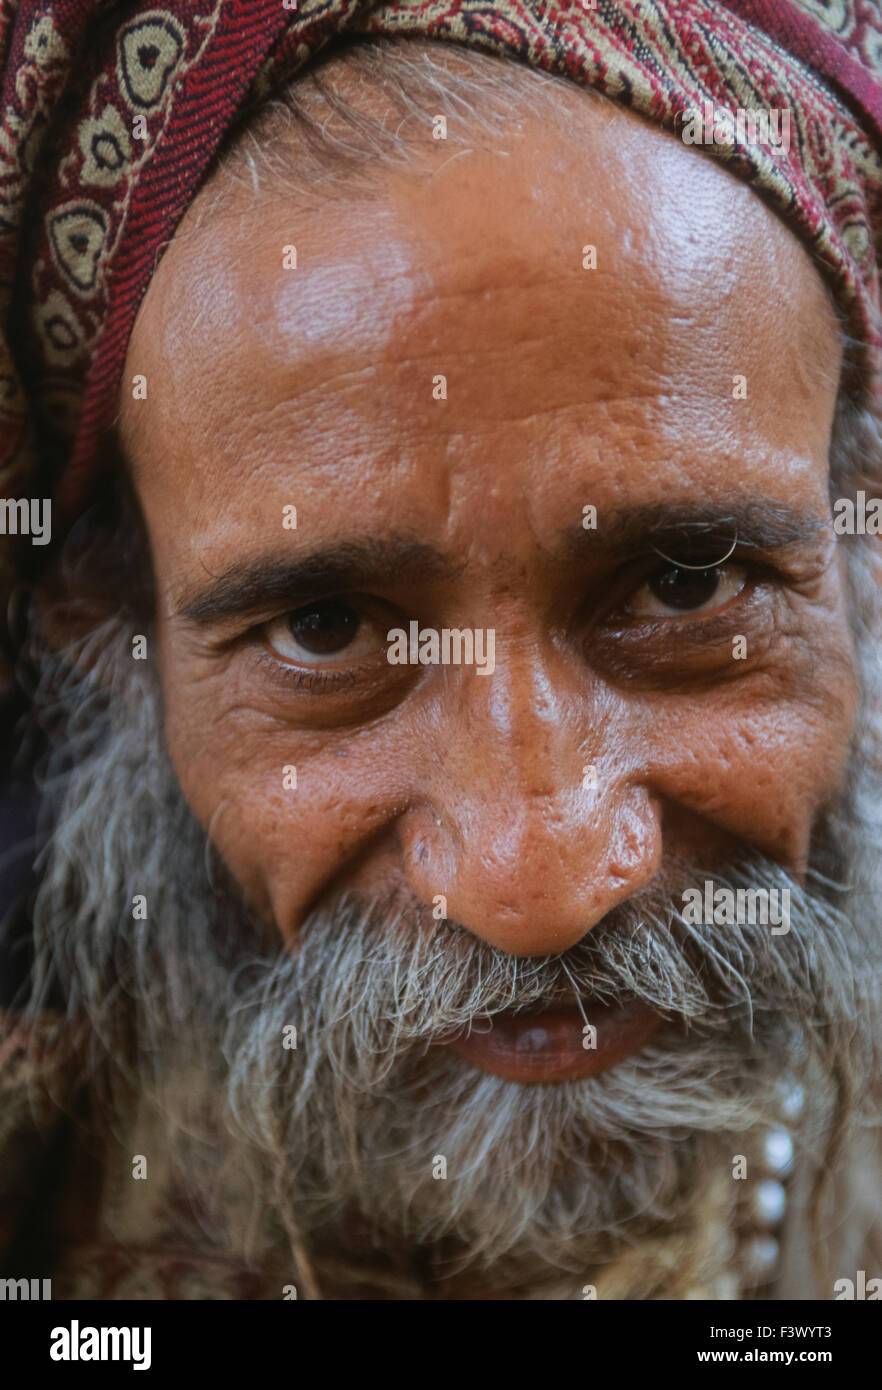 Sadhu from the Juna Akhara at an ashram, Simhastha Kumbh Mela 2004, Ujjain, Madhya Pradesh, India Stock Photo